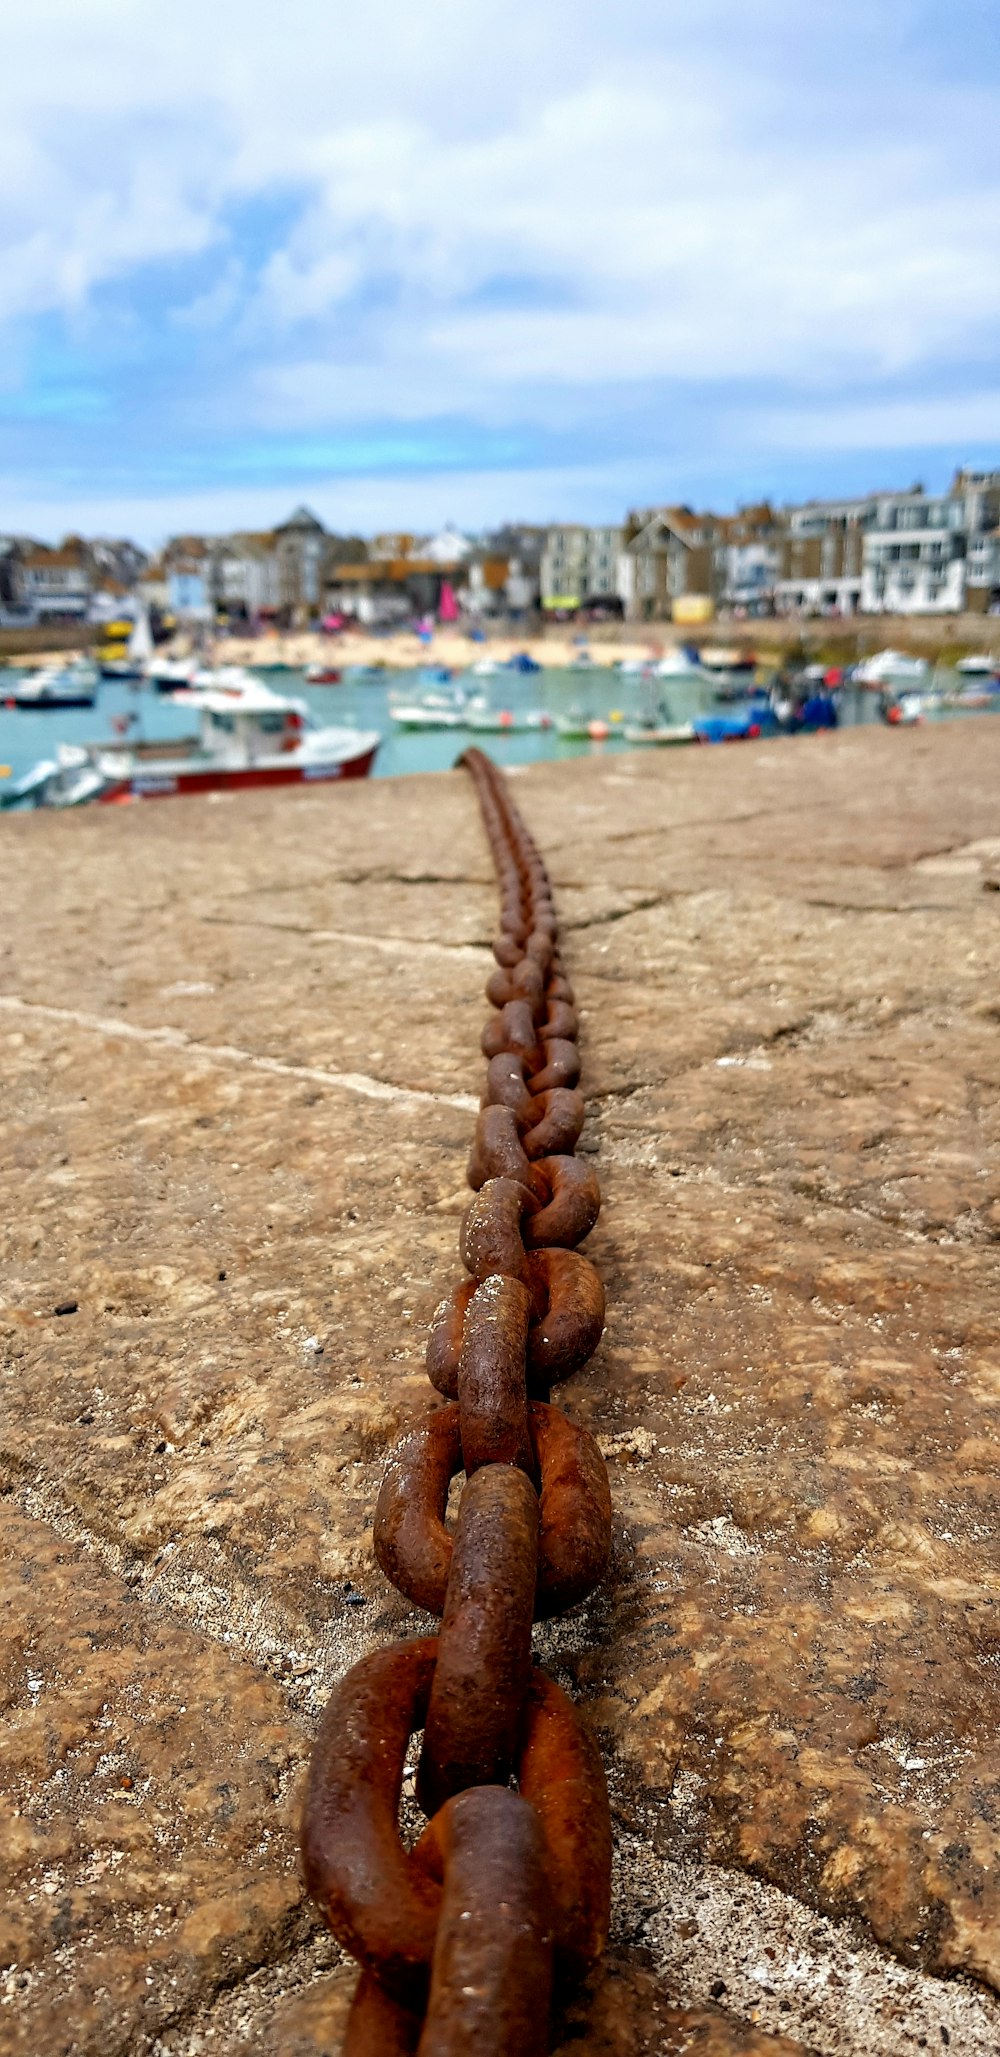 Una larga cadena de cadenas oxidadas sobre una superficie de hormigón